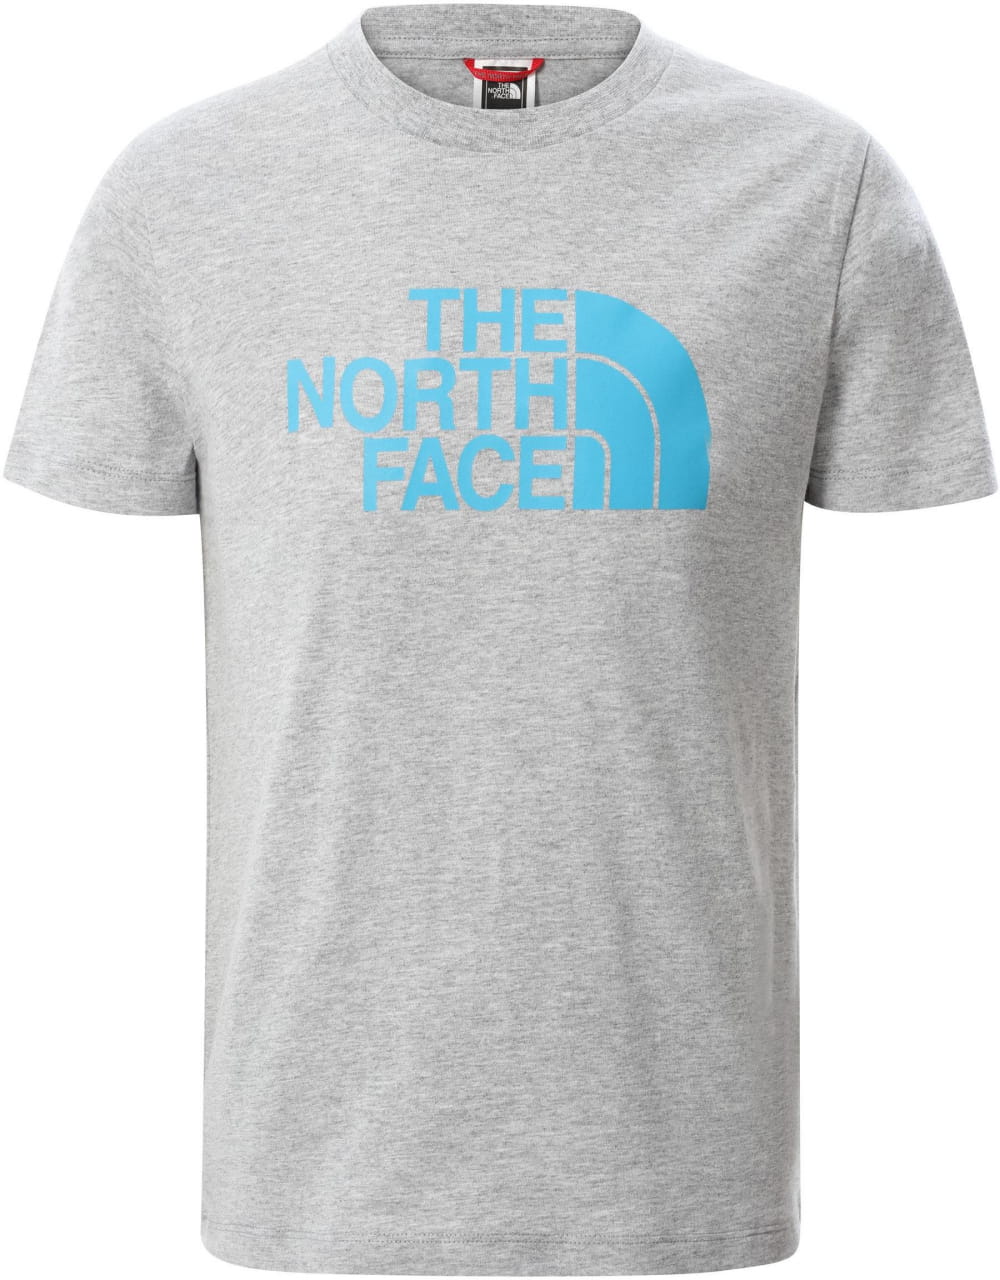 Dětské tričko s krátkým rukávem The North Face Youth S/S Easy Tee